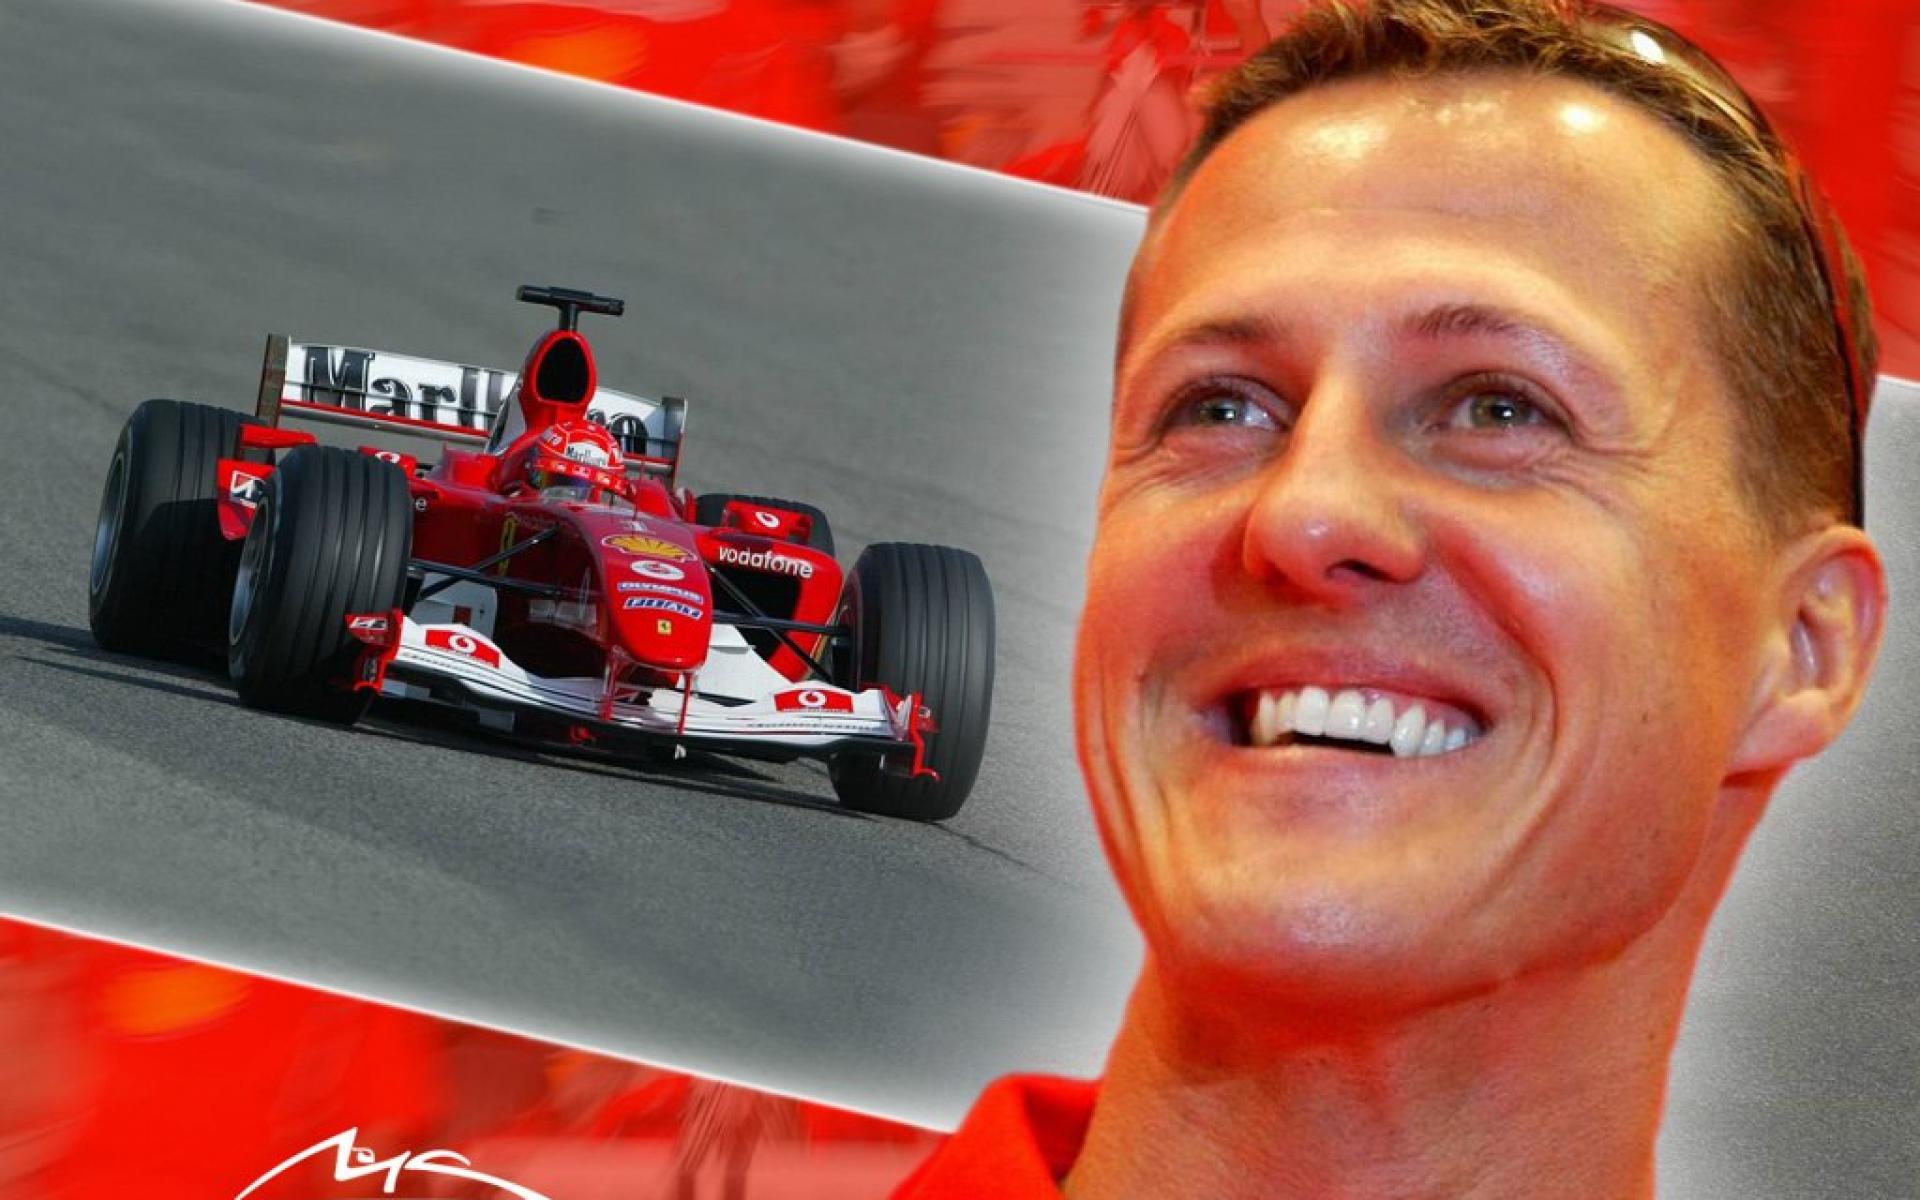 Free Michael Schumacher Wallpaper